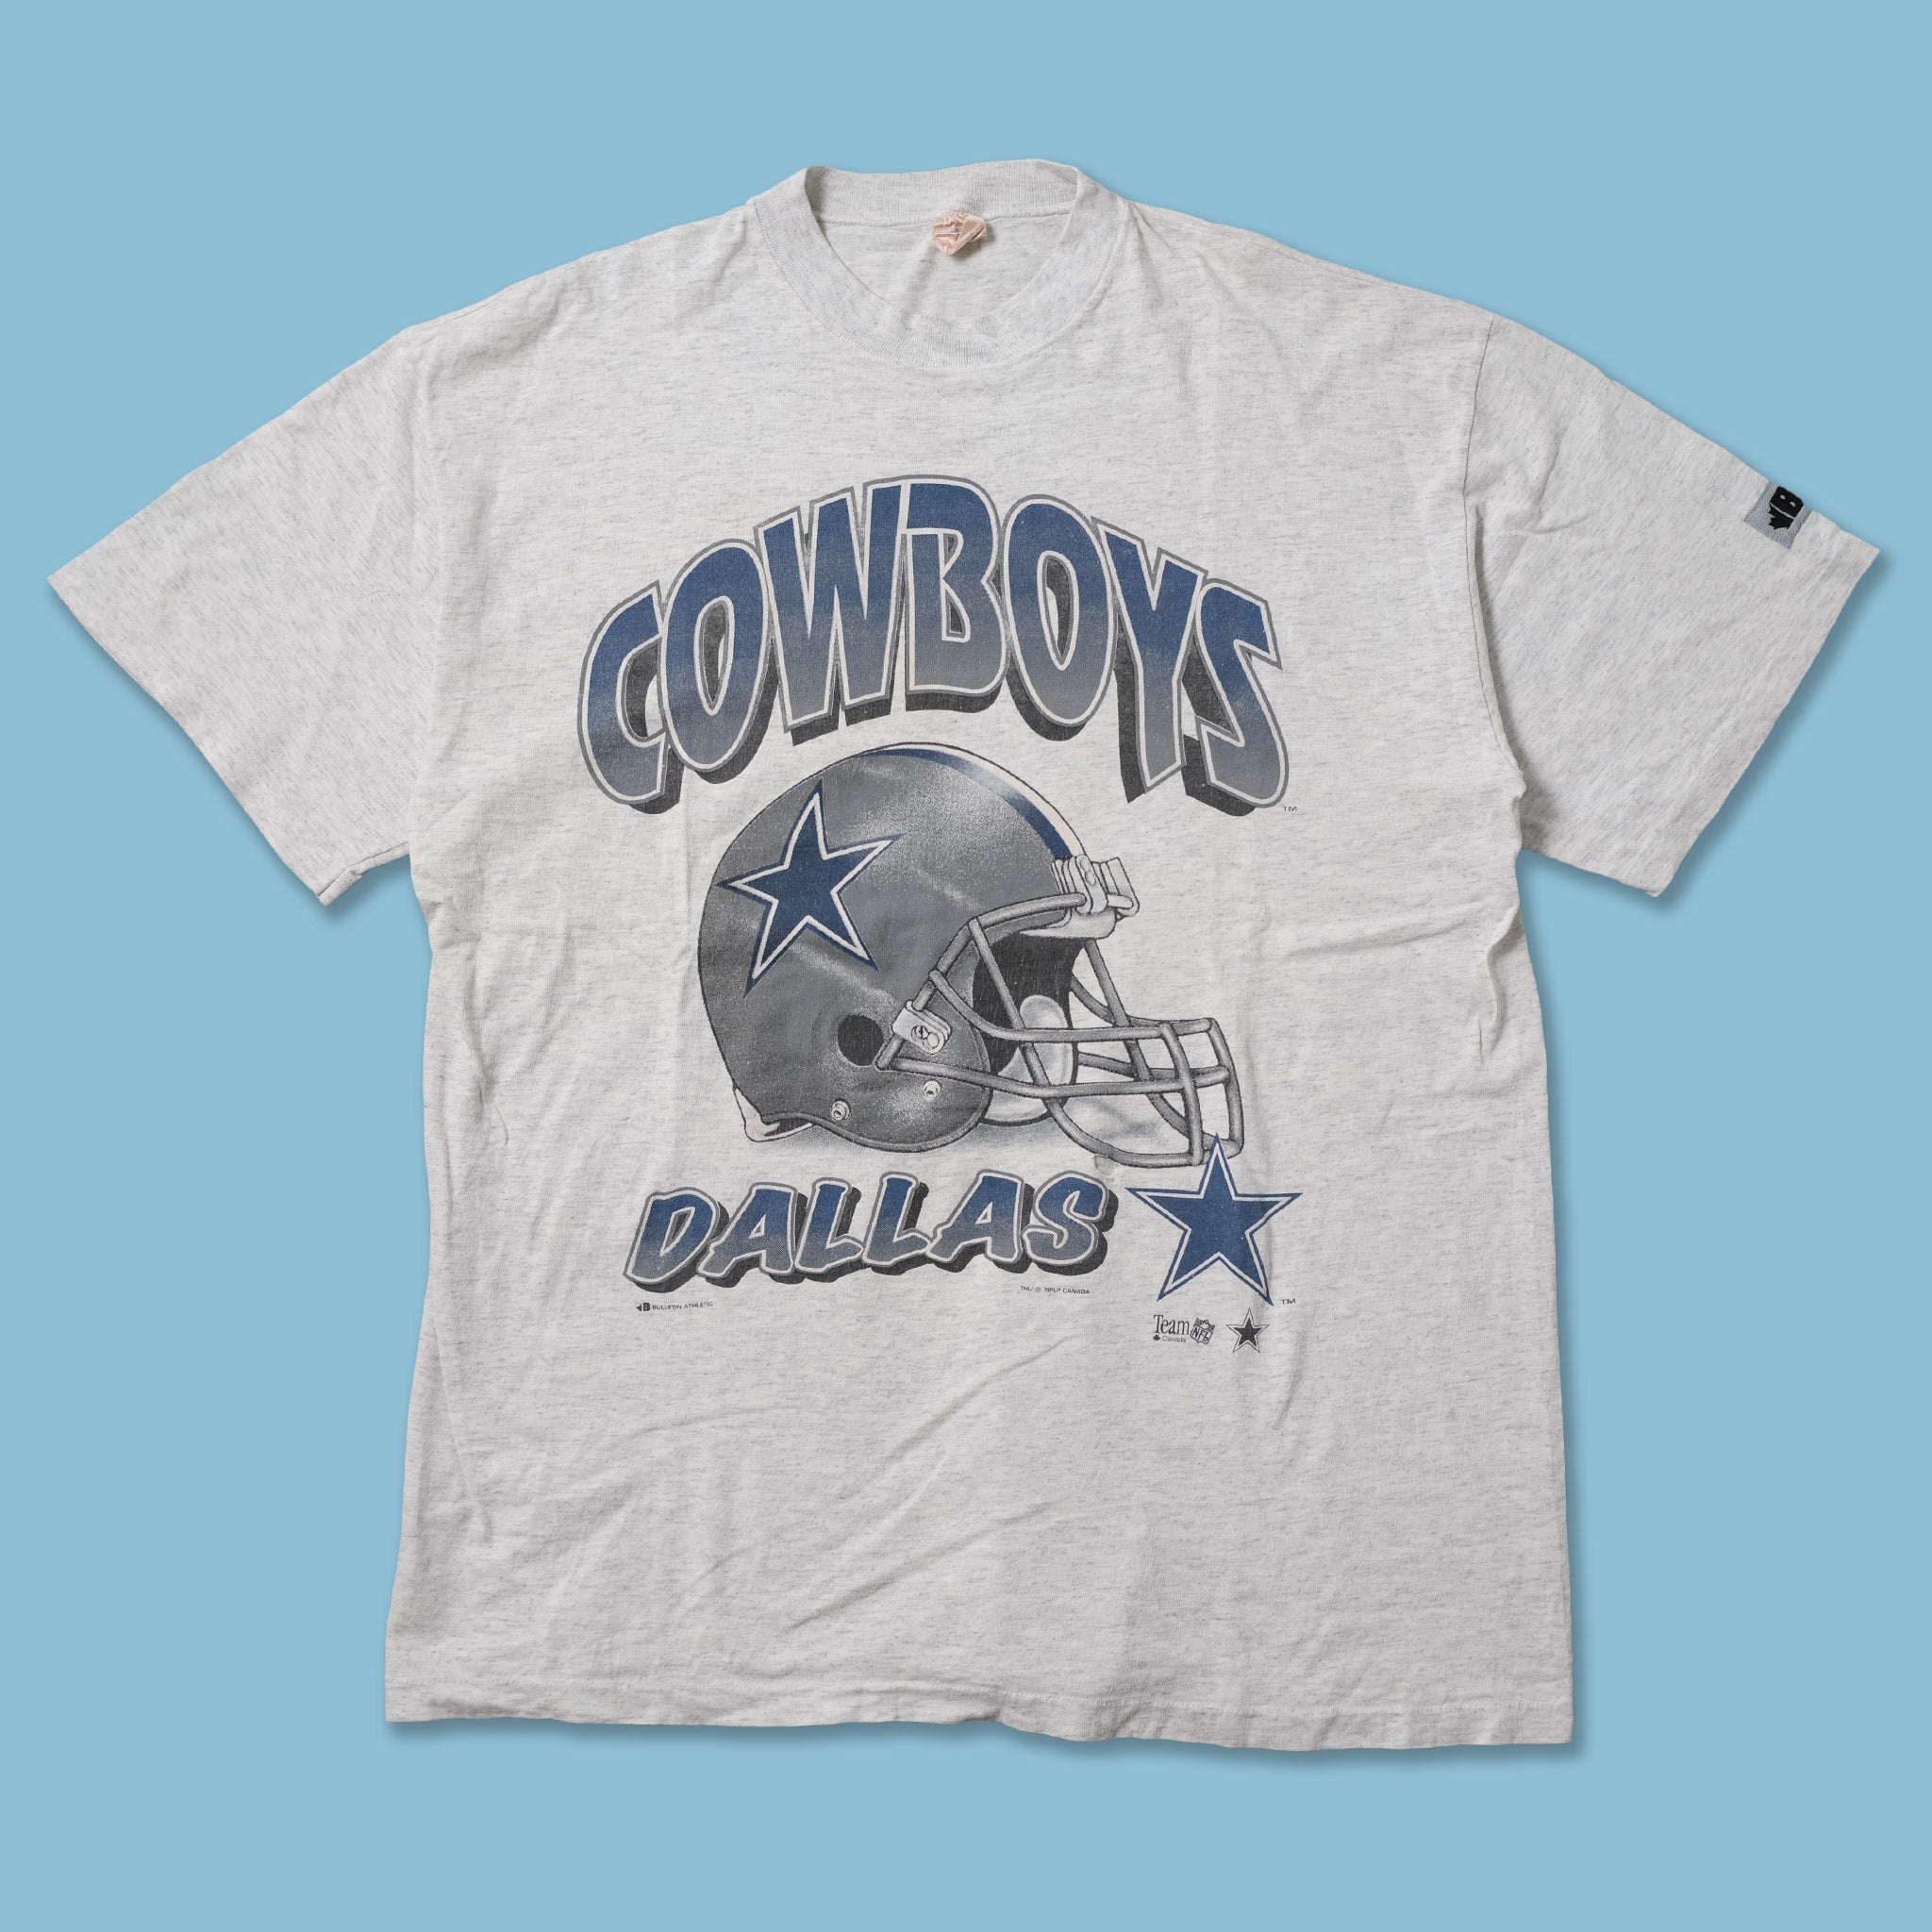 throwback cowboys shirts